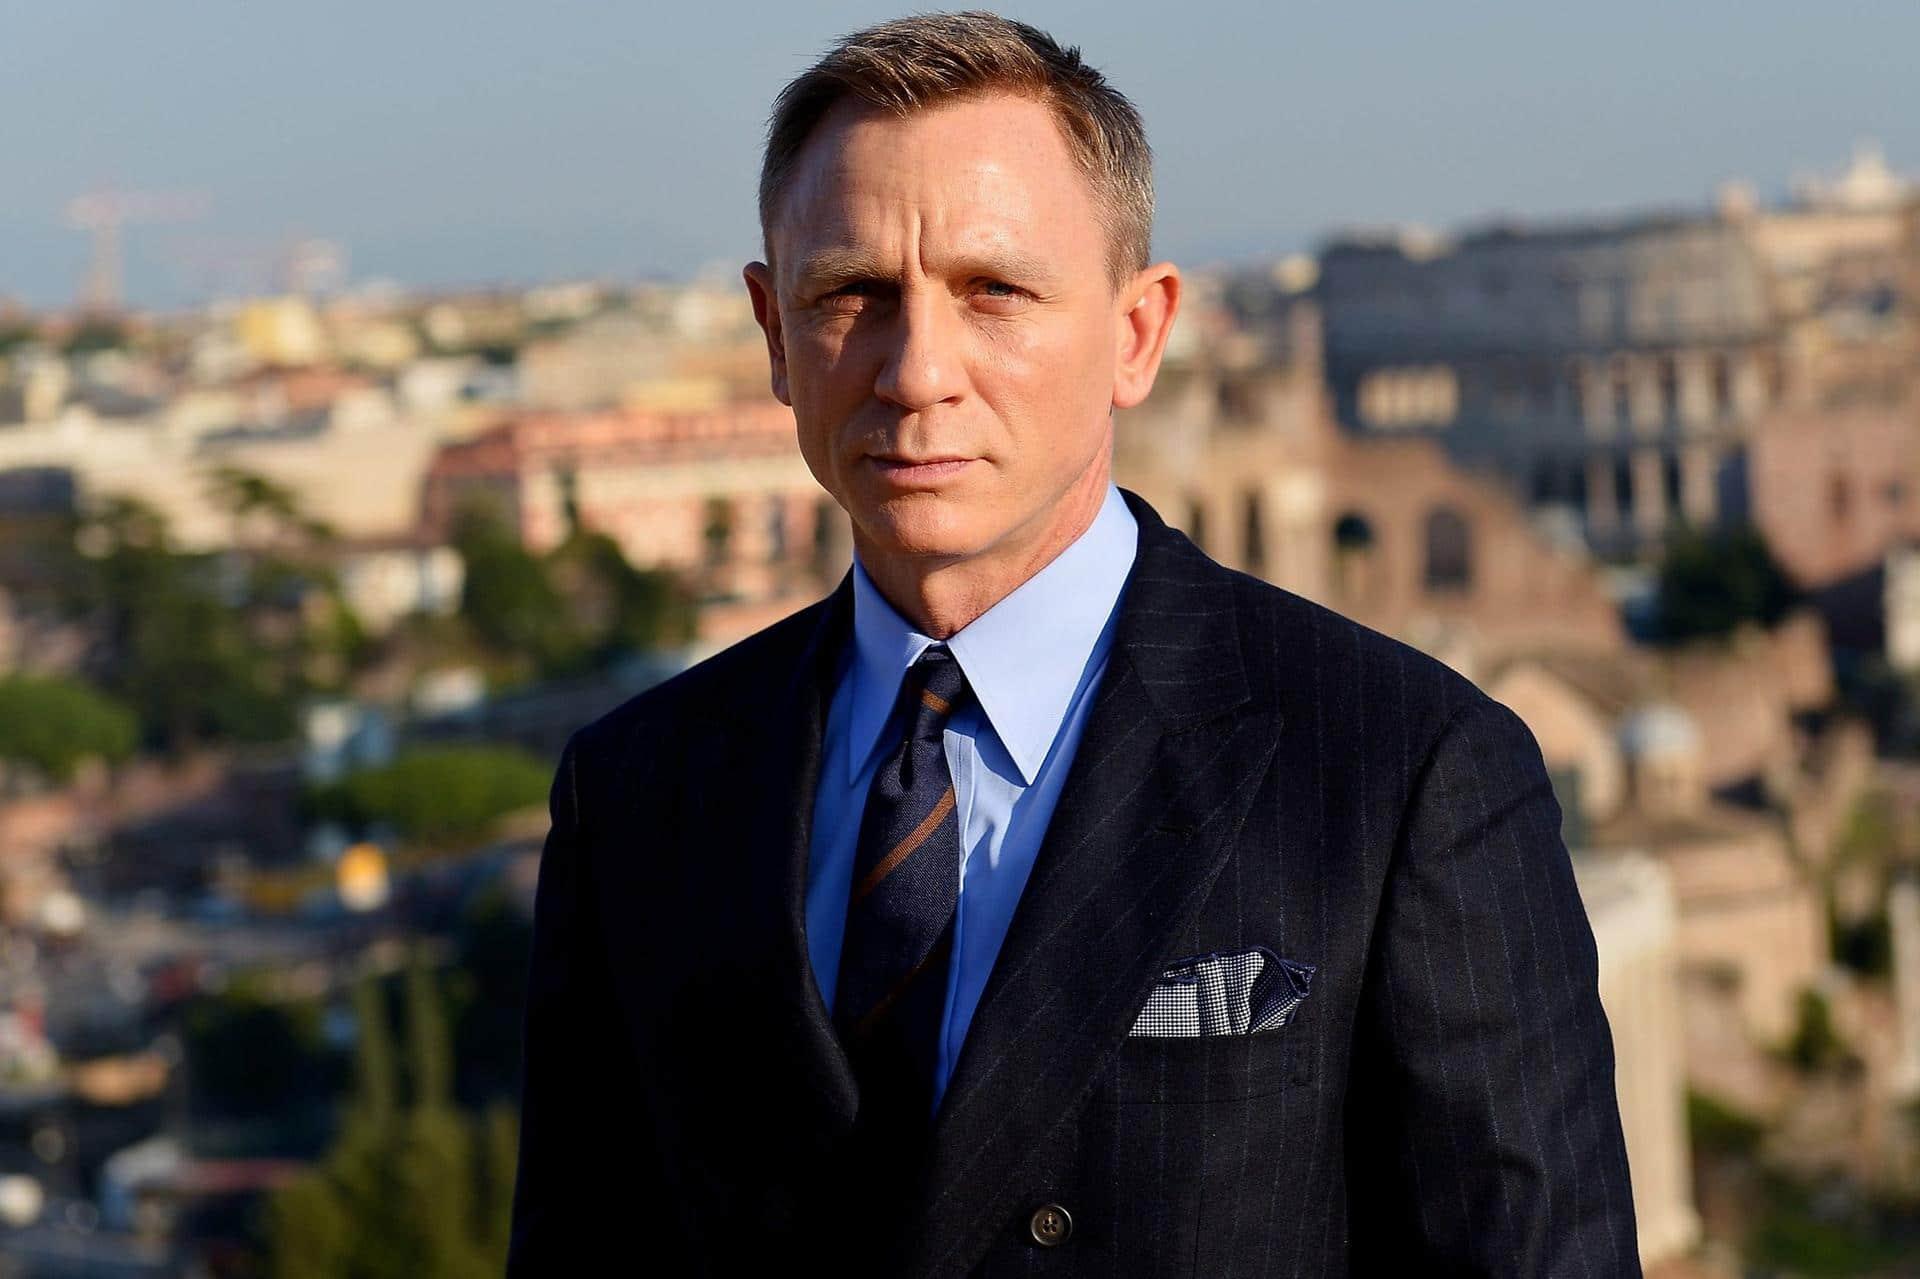 007 | Daniel Craig ainda não decidiu se vai voltar para o próximo filme